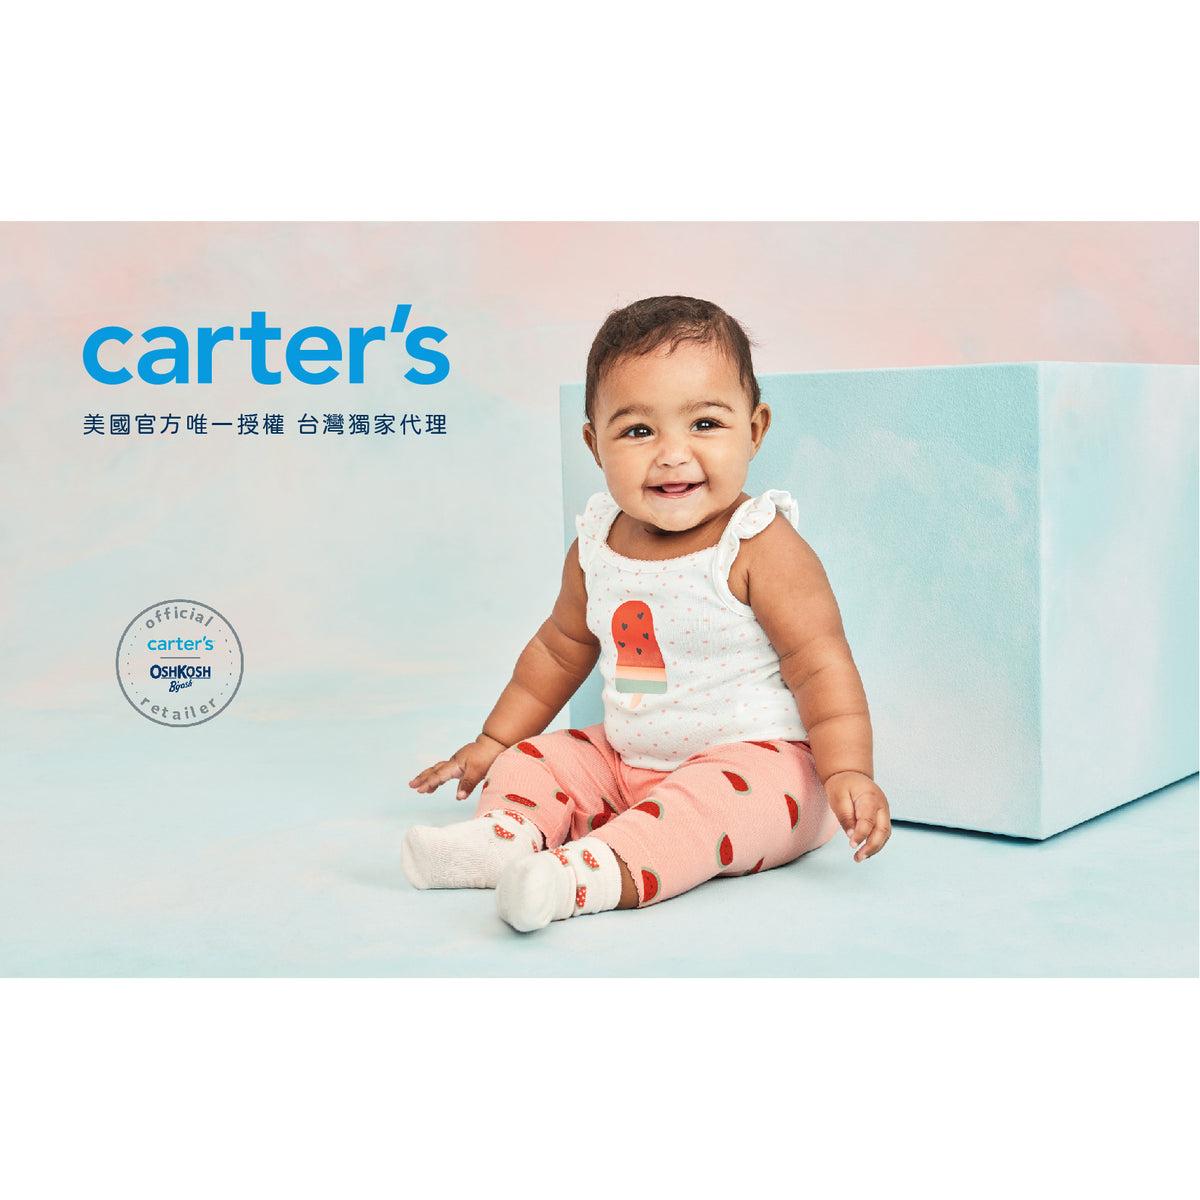 Carter's 咖啡白條紋3件組套裝(6M-24M)